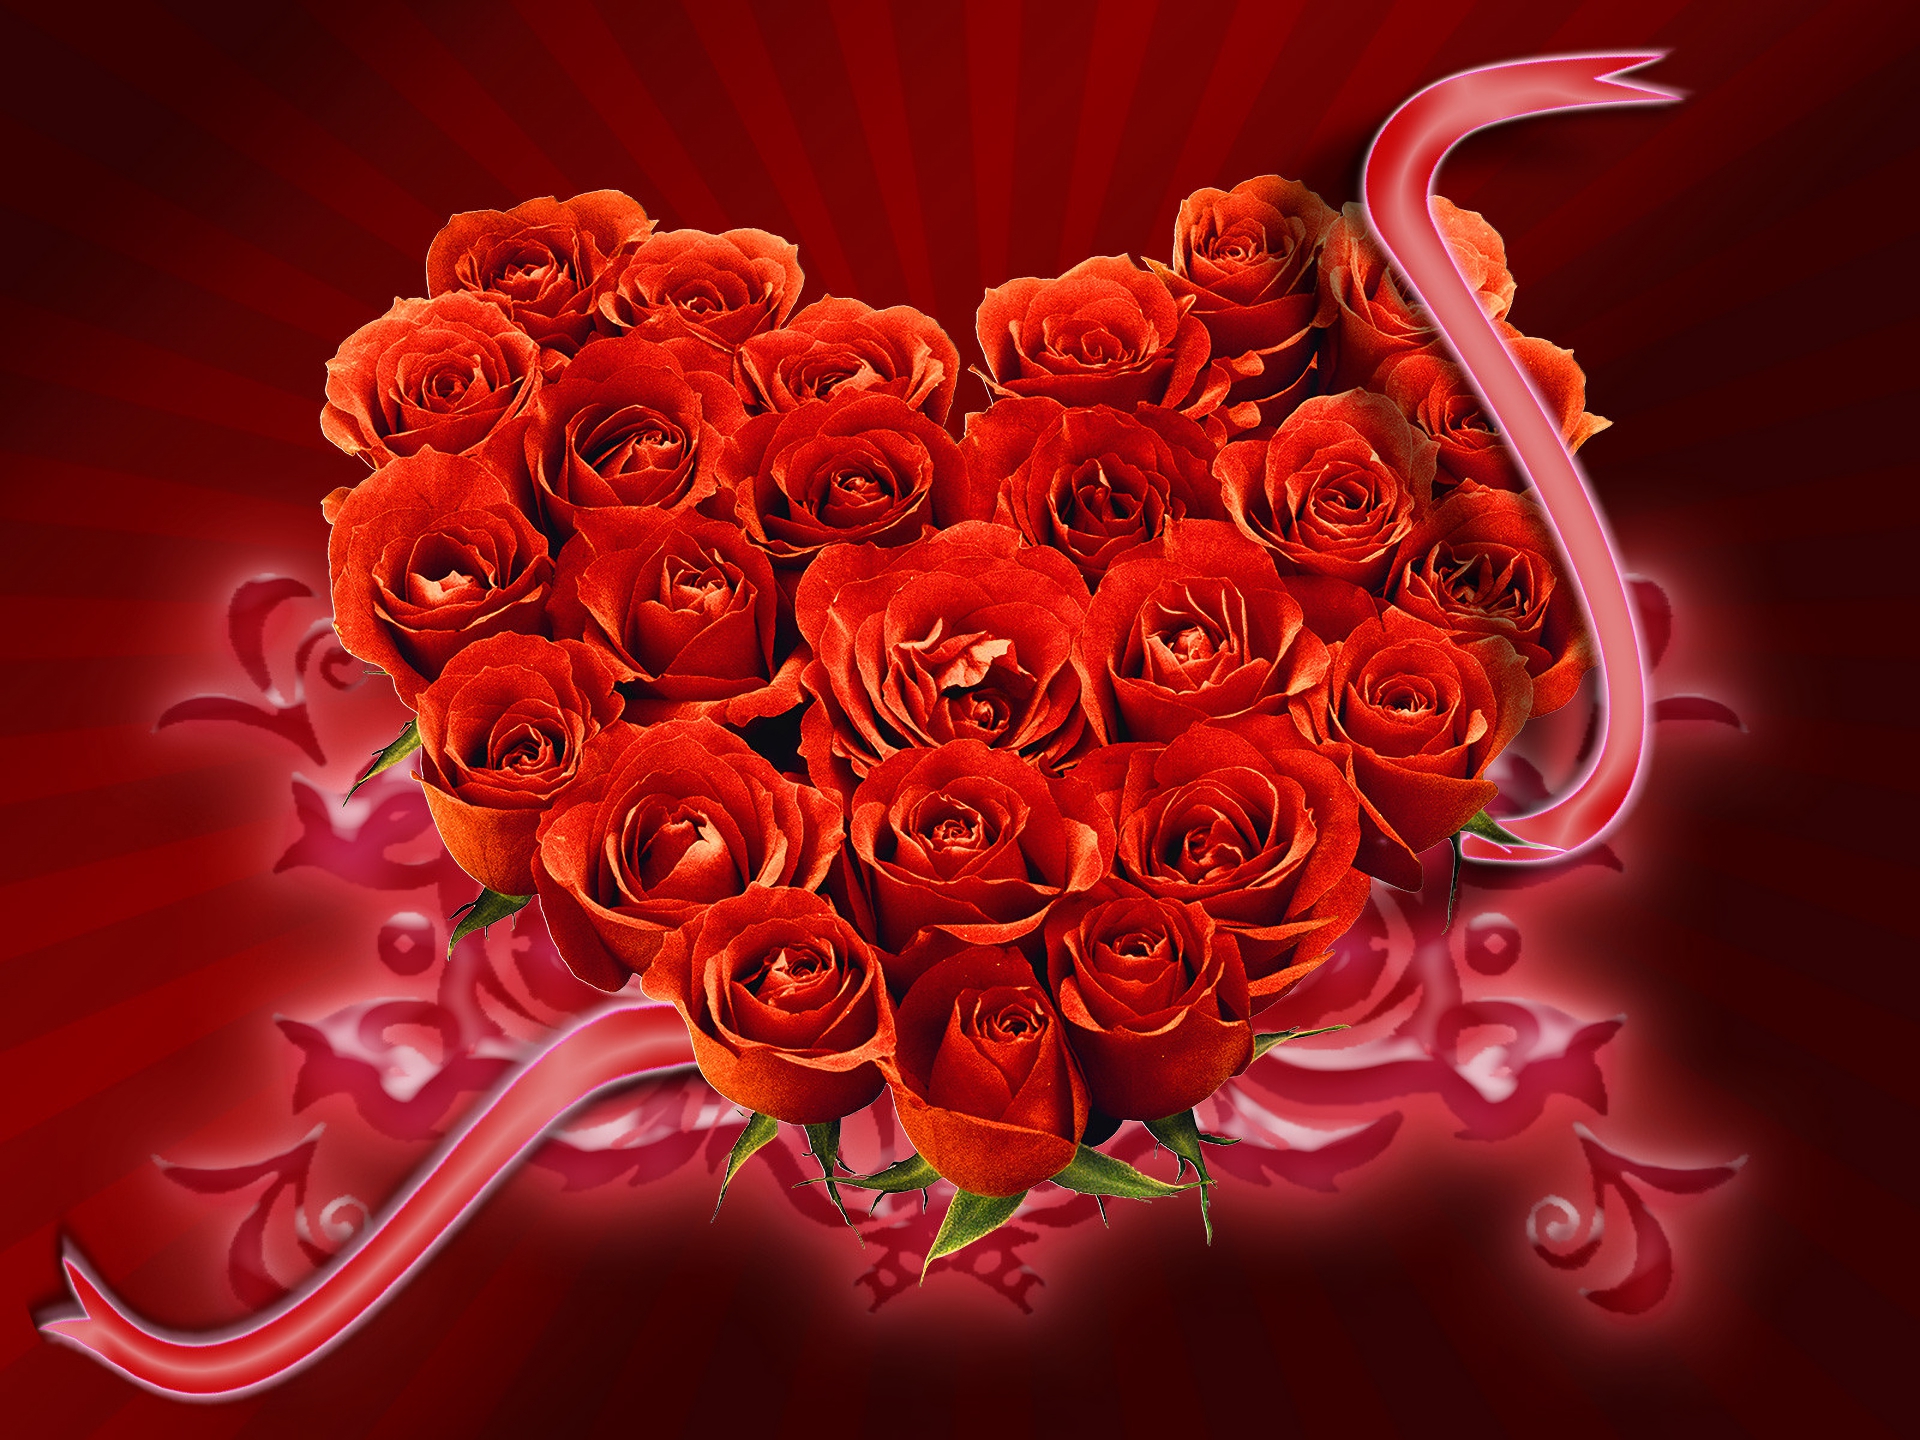 Скачать обои бесплатно Любовь, Роза, Красный, Сердце, Художественные, Красный Цветок, В Форме Сердца картинка на рабочий стол ПК